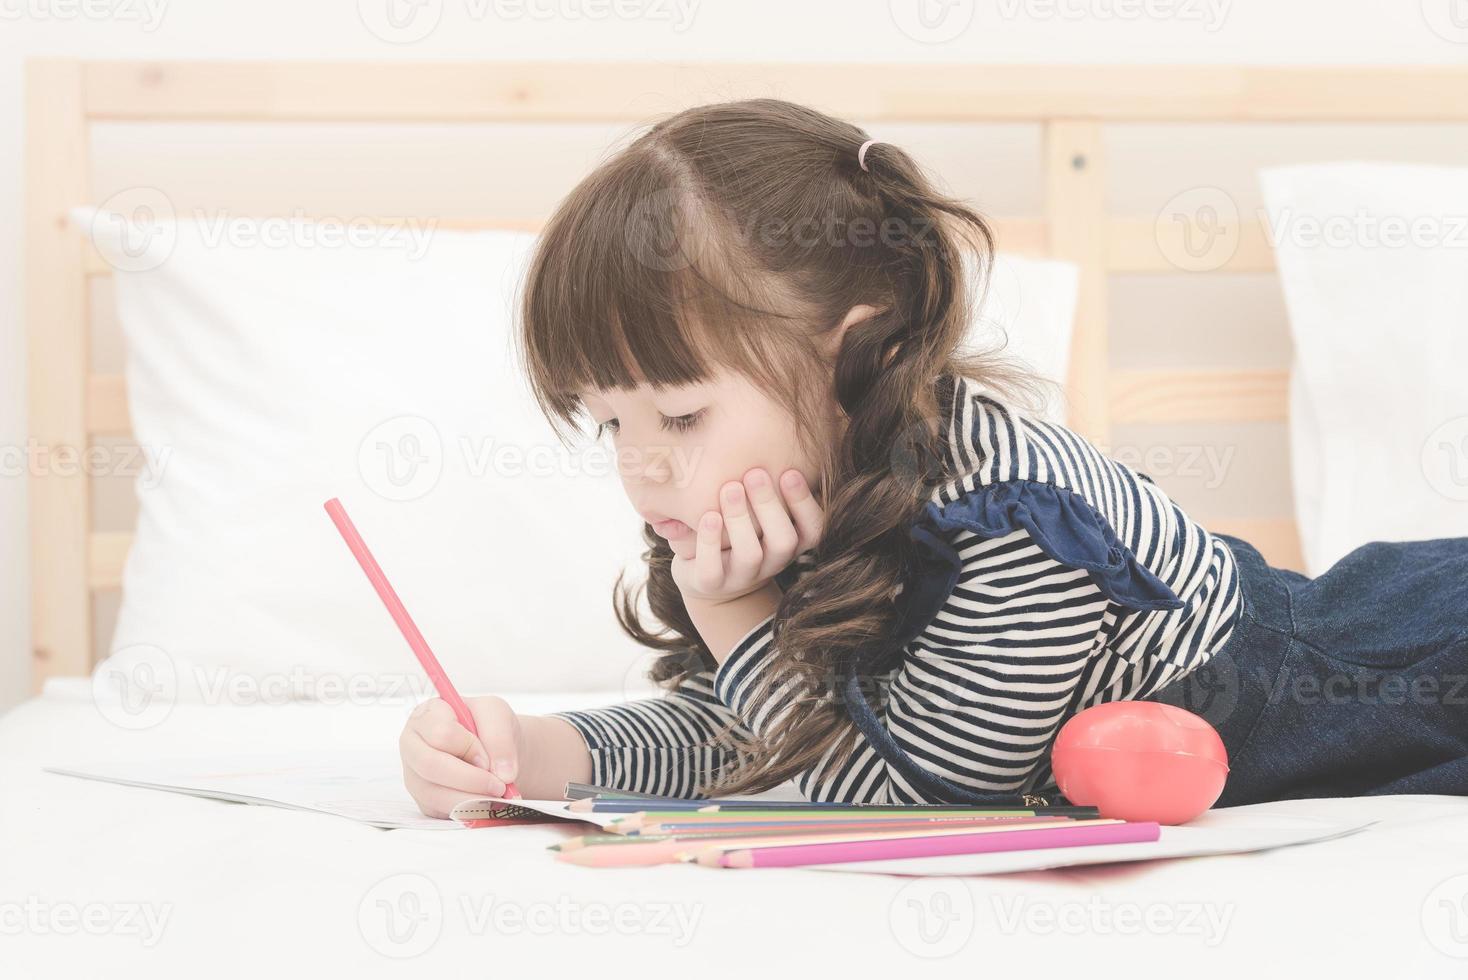 carina bambina asiatica che fa i compiti, scrivendo con matite colorate sul letto di casa. design elegante per il gioco dei bambini, l'apprendimento prescolare e il concetto di educazione artistica creativa. foto